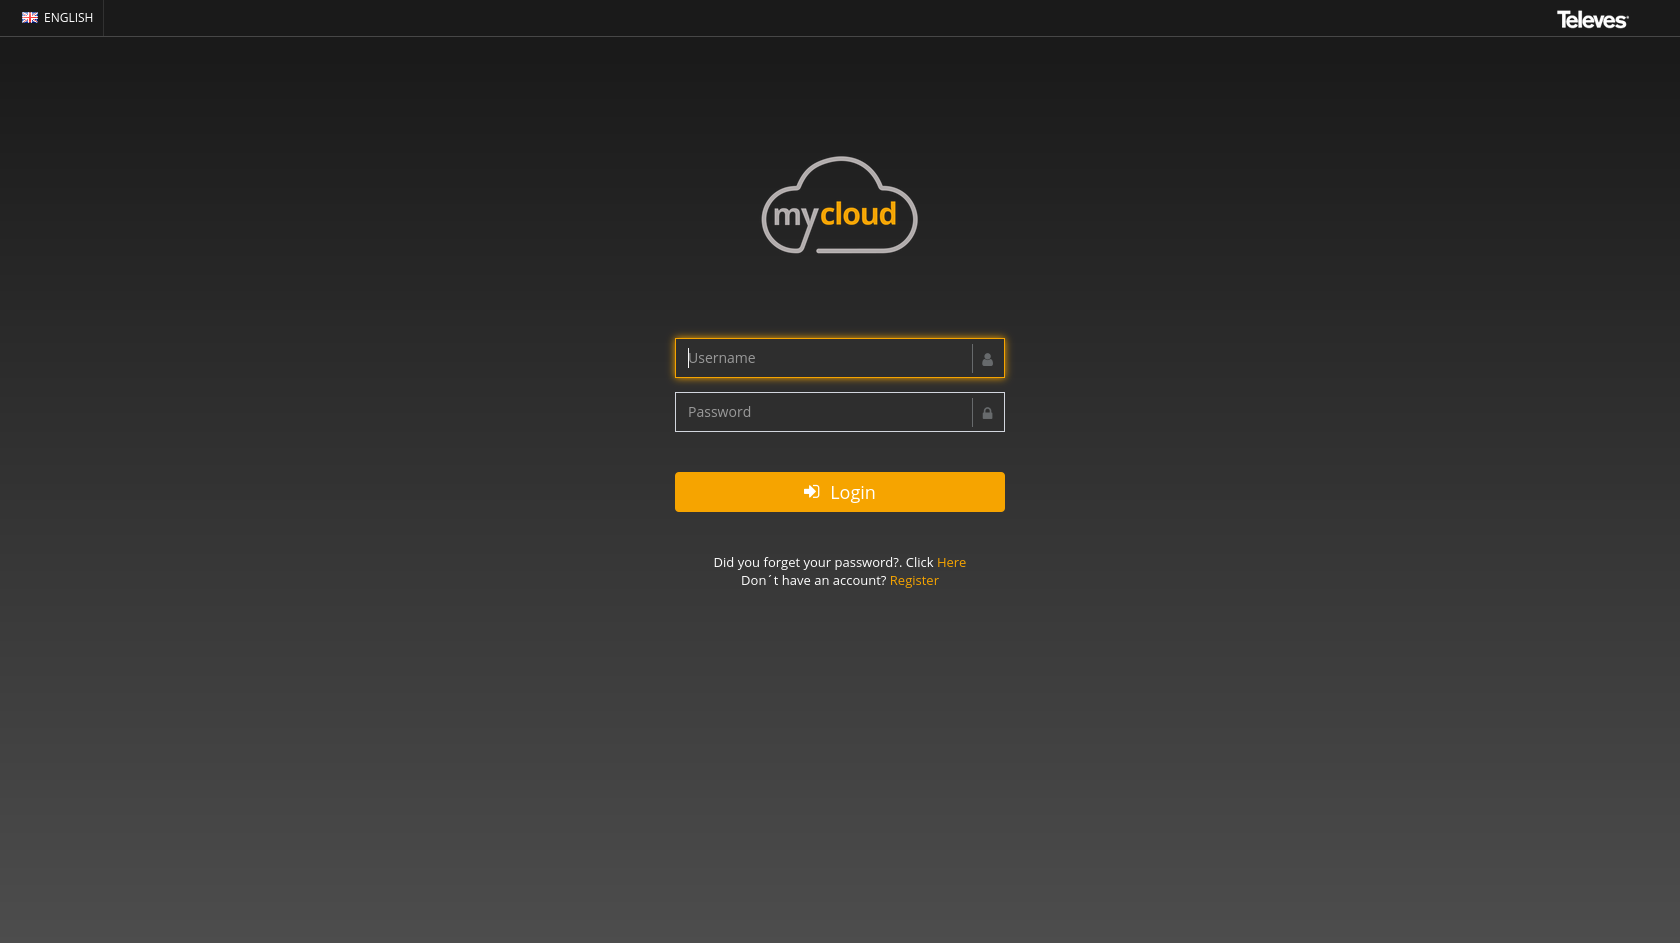 Zugang zum MyCloud-Portal: Geben Sie Ihr Benutzerkonto ein - dasjenige, das Sie zur Registrierung Ihrer Messgeräte verwendet haben